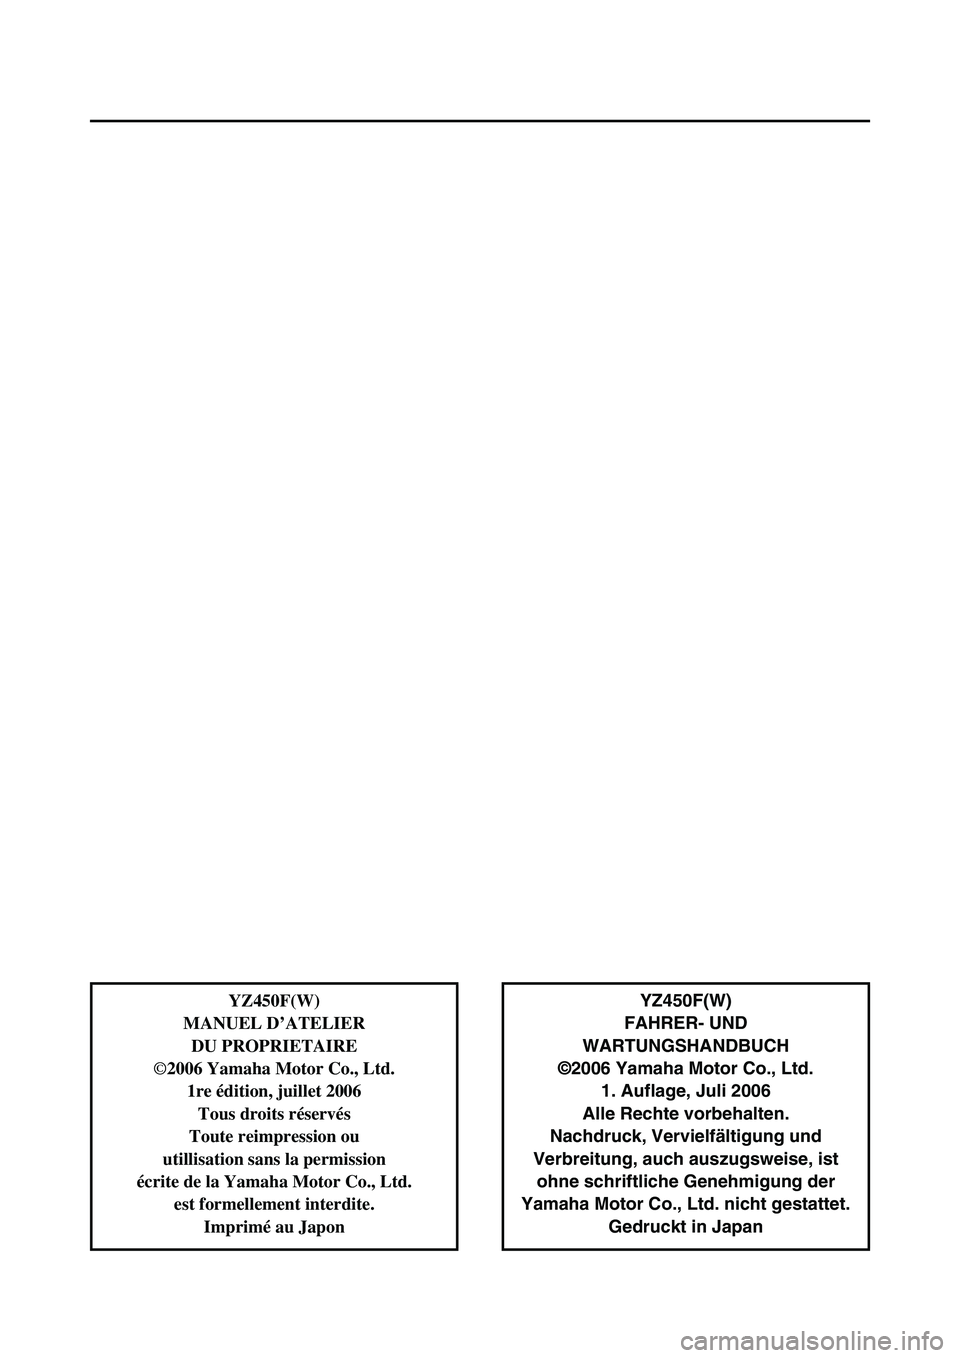 YAMAHA YZ450F 2007  Notices Demploi (in French) YZ450F(W)
FAHRER- UND 
WARTUNGSHANDBUCH
©2006 Yamaha Motor Co., Ltd.
1. Auflage, Juli 2006
Alle Rechte vorbehalten.
Nachdruck, Vervielfältigung und
Verbreitung, auch auszugsweise, ist
ohne schriftli